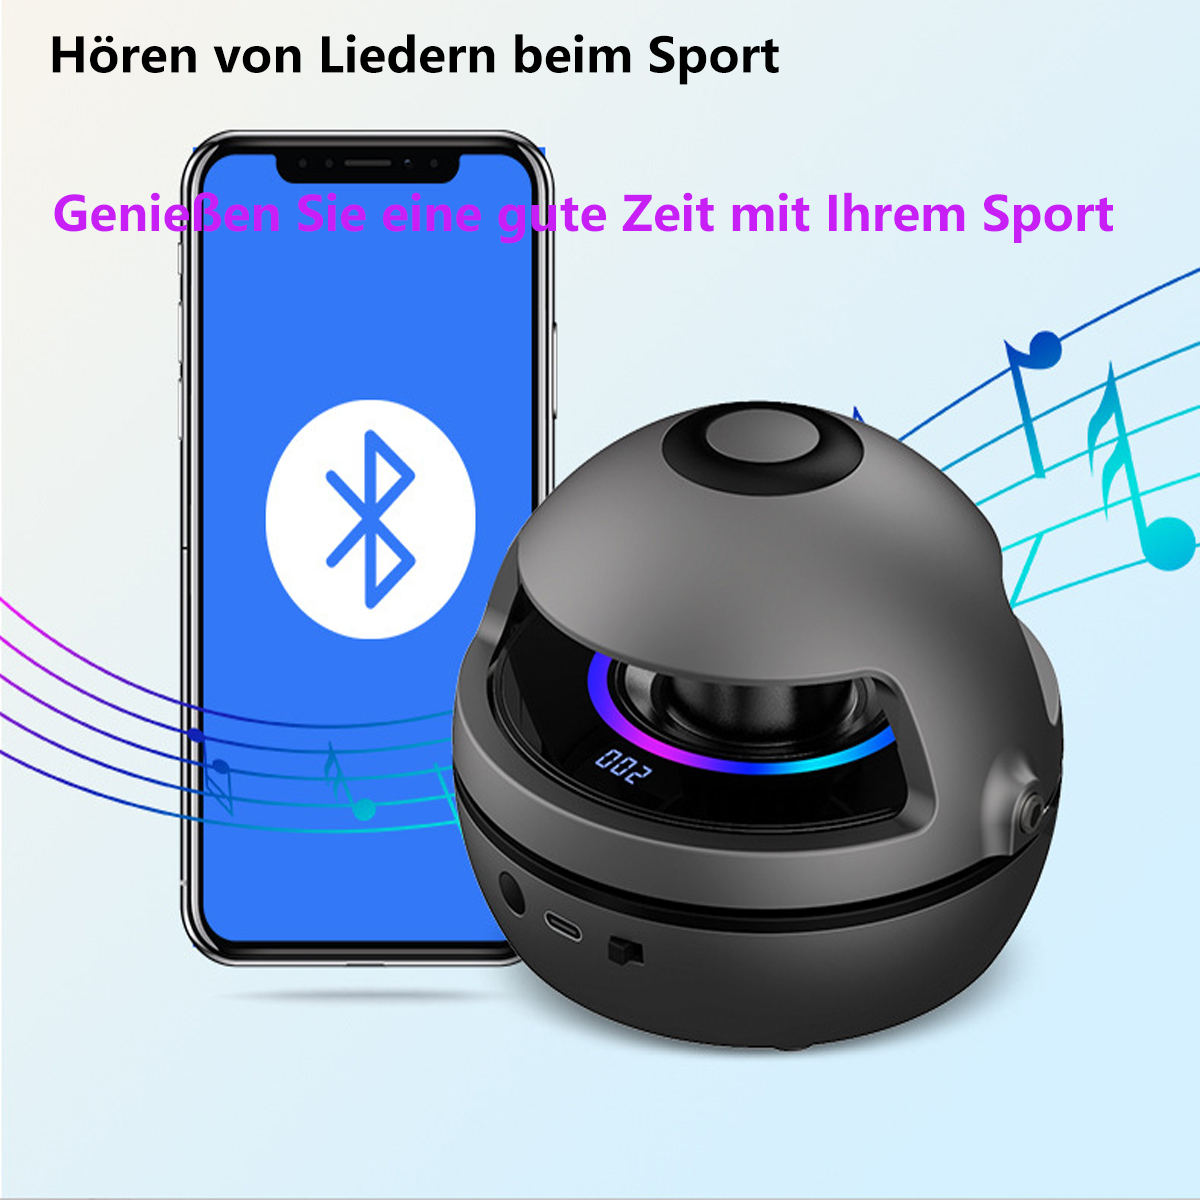 SYNTEK Smart Schwarz Gott Springseil, Musik Jump Maschine Verlust Übung Fitness Zählung Bluetooth Rope Gewicht Elektronische